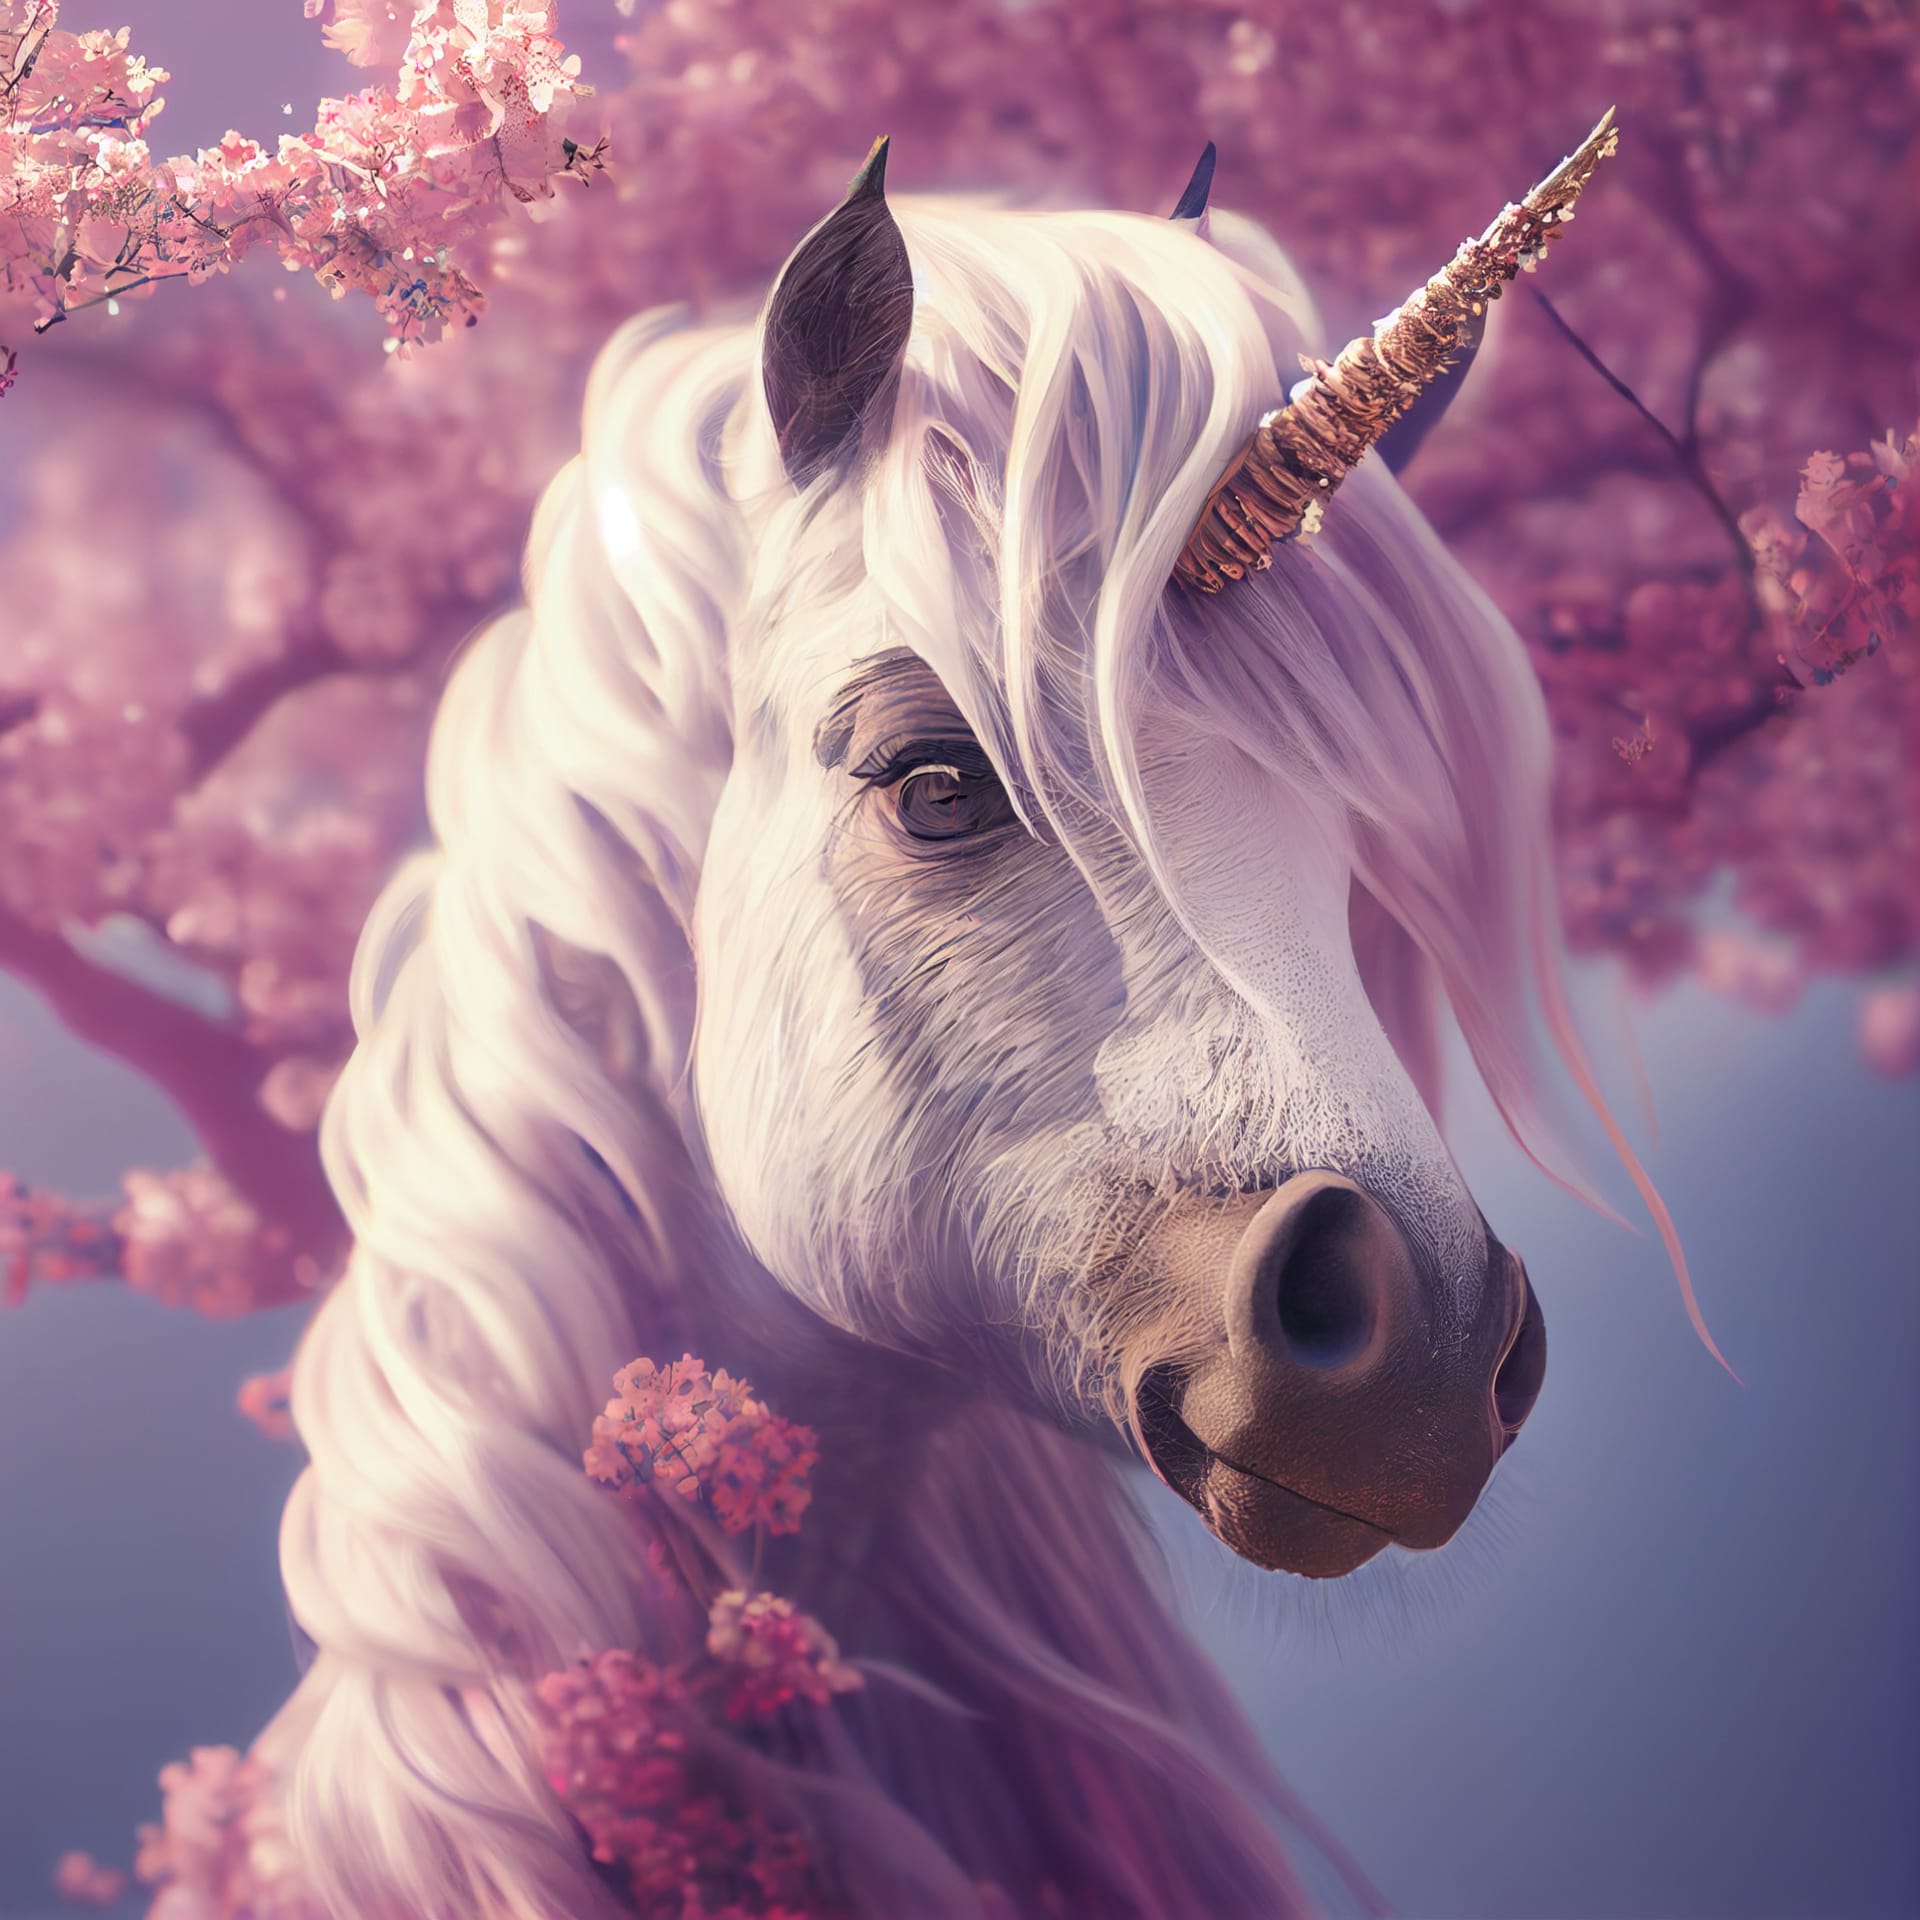 Pink profile picture cute fantasy unicorn cherry blossom sakura tree illustration fine image